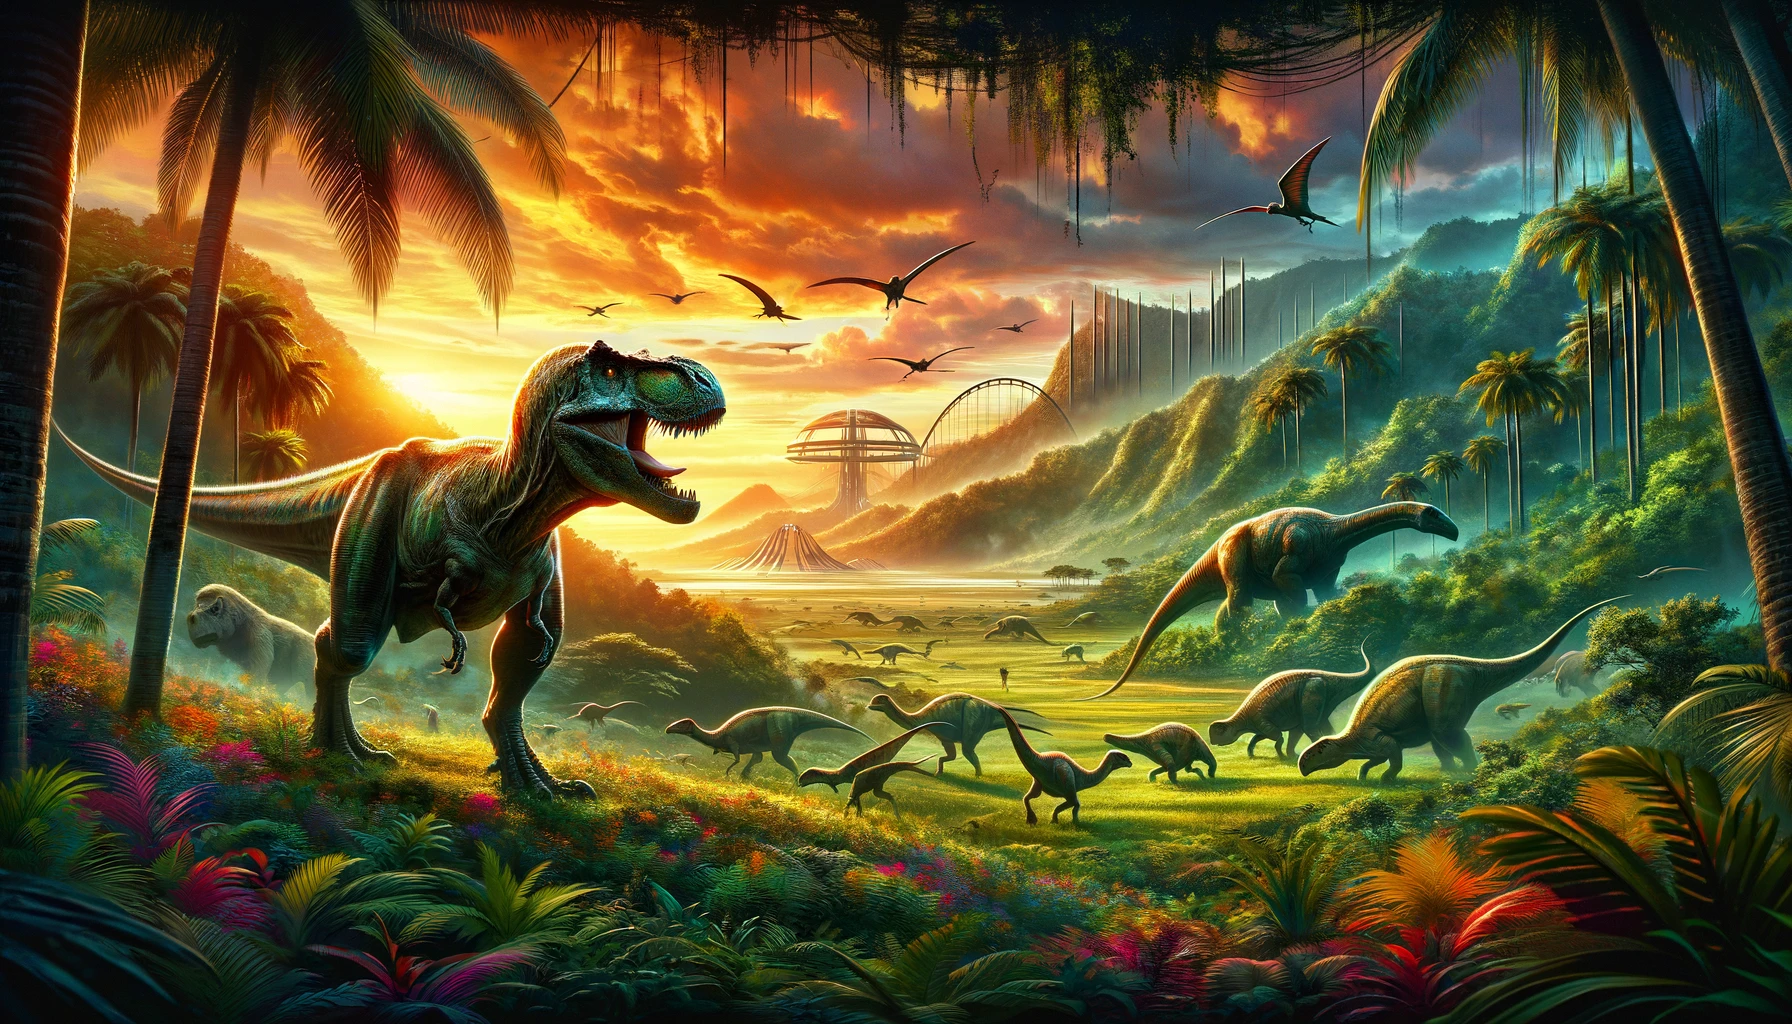 De volgende film in de Jurassic World Series staat gepland voor juli 2025